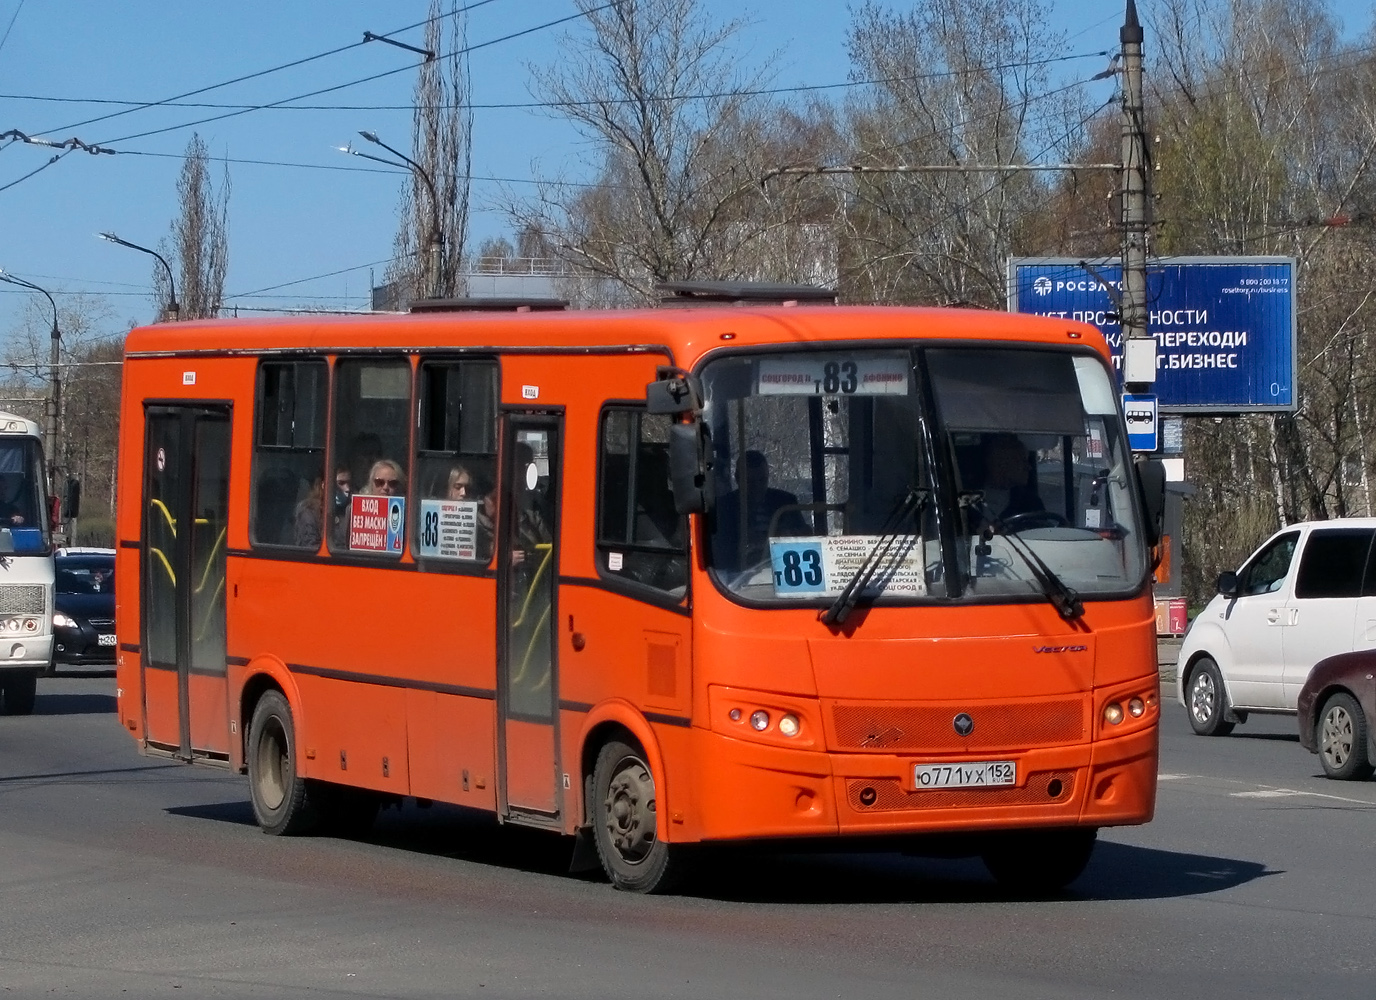 Nizhegorodskaya region, PAZ-320414-05 "Vektor" Nr. О 771 УХ 152